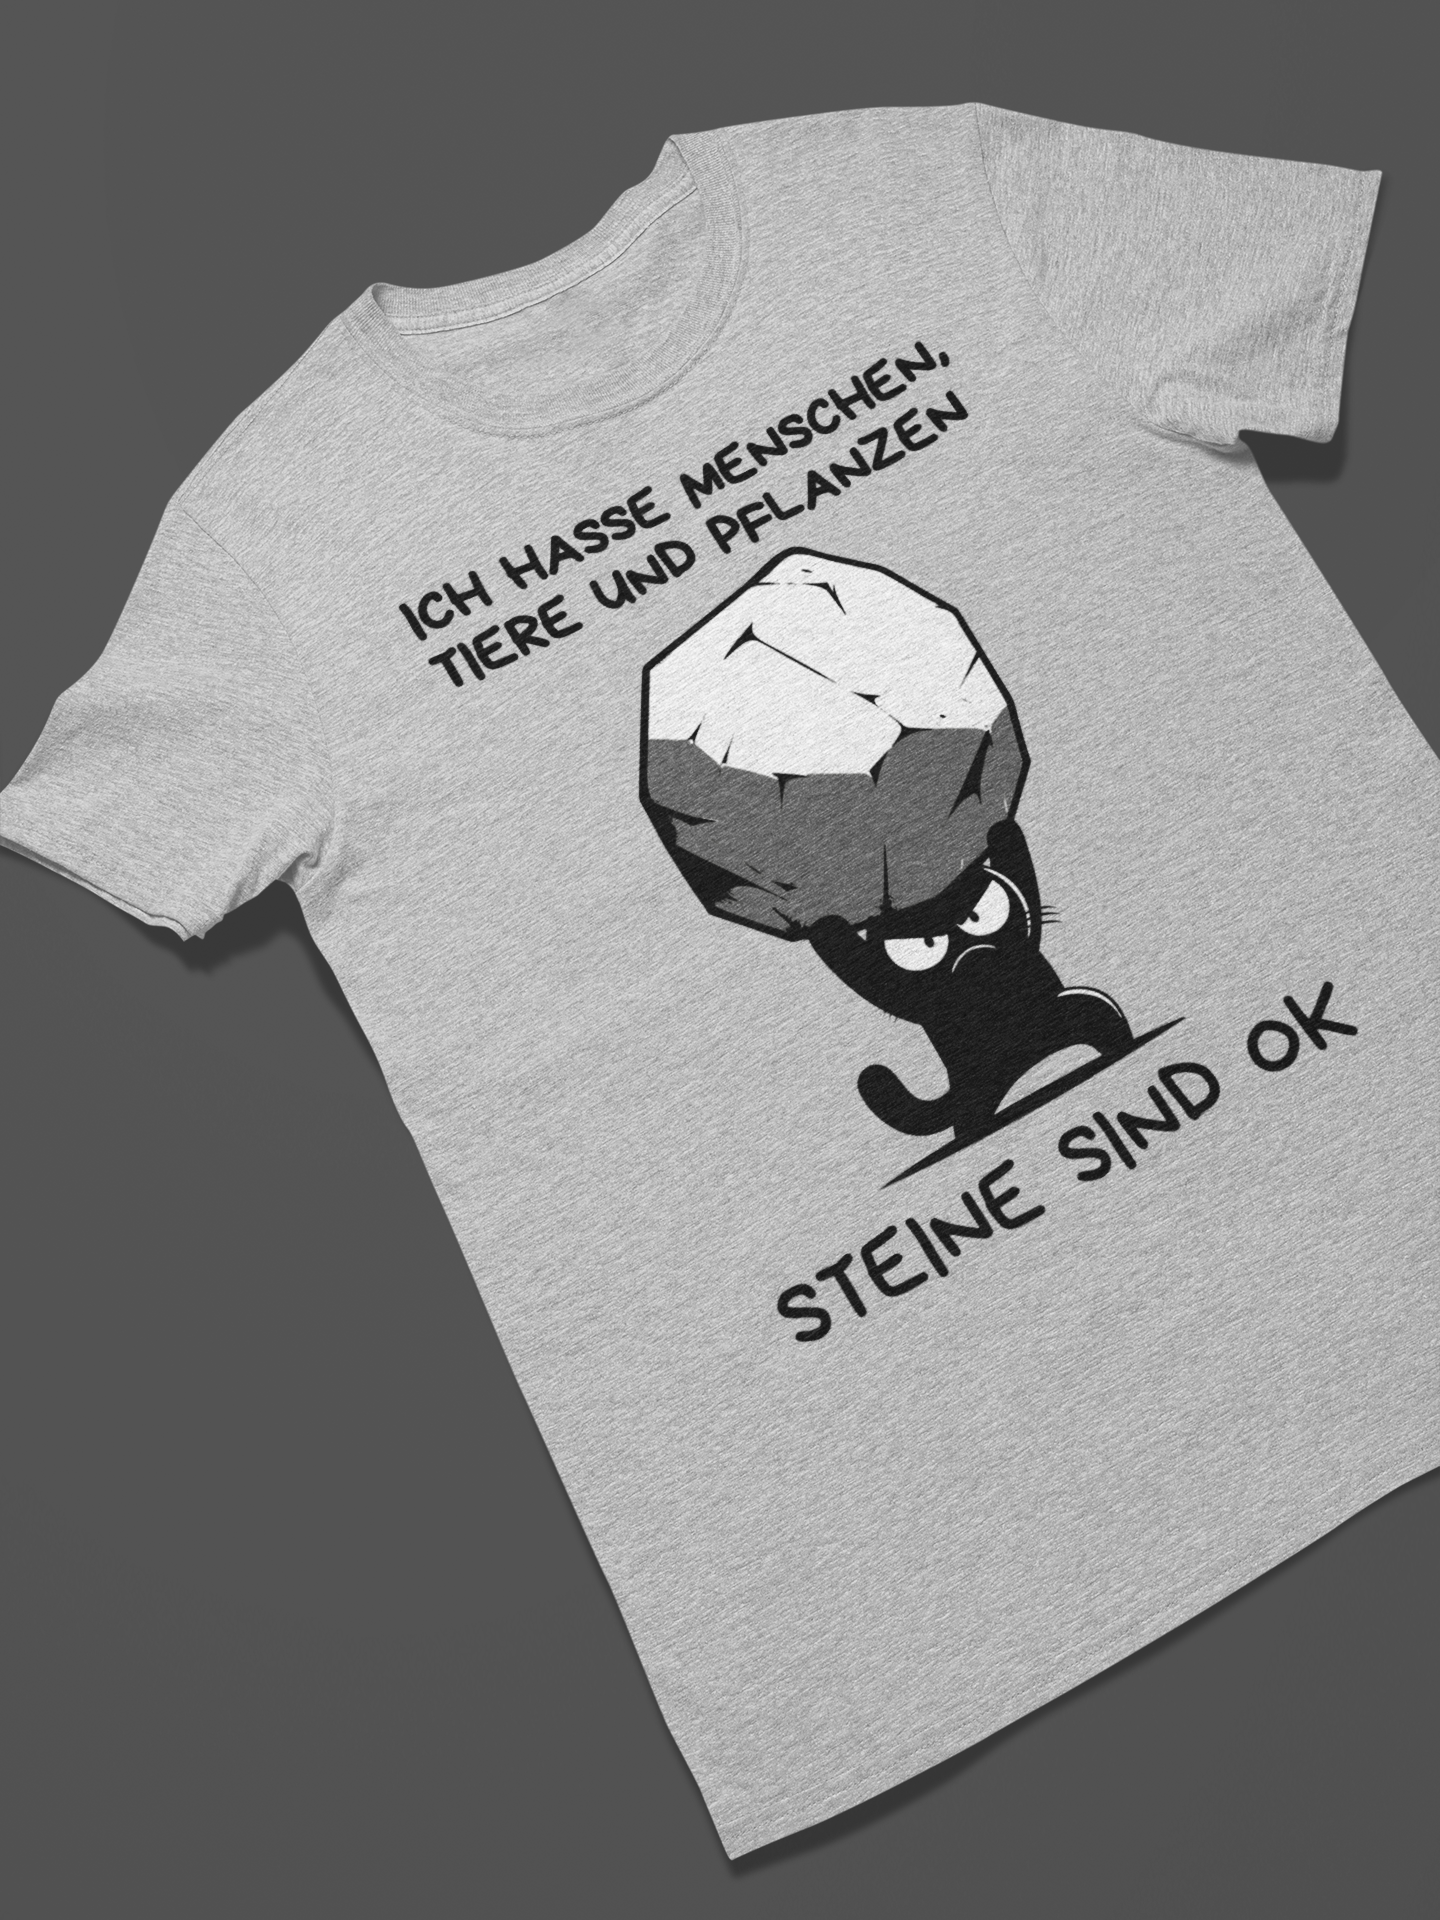 'Ich hasse Menschen, Tiere und Pflanzen - Steine sind Okay' T-Shirt